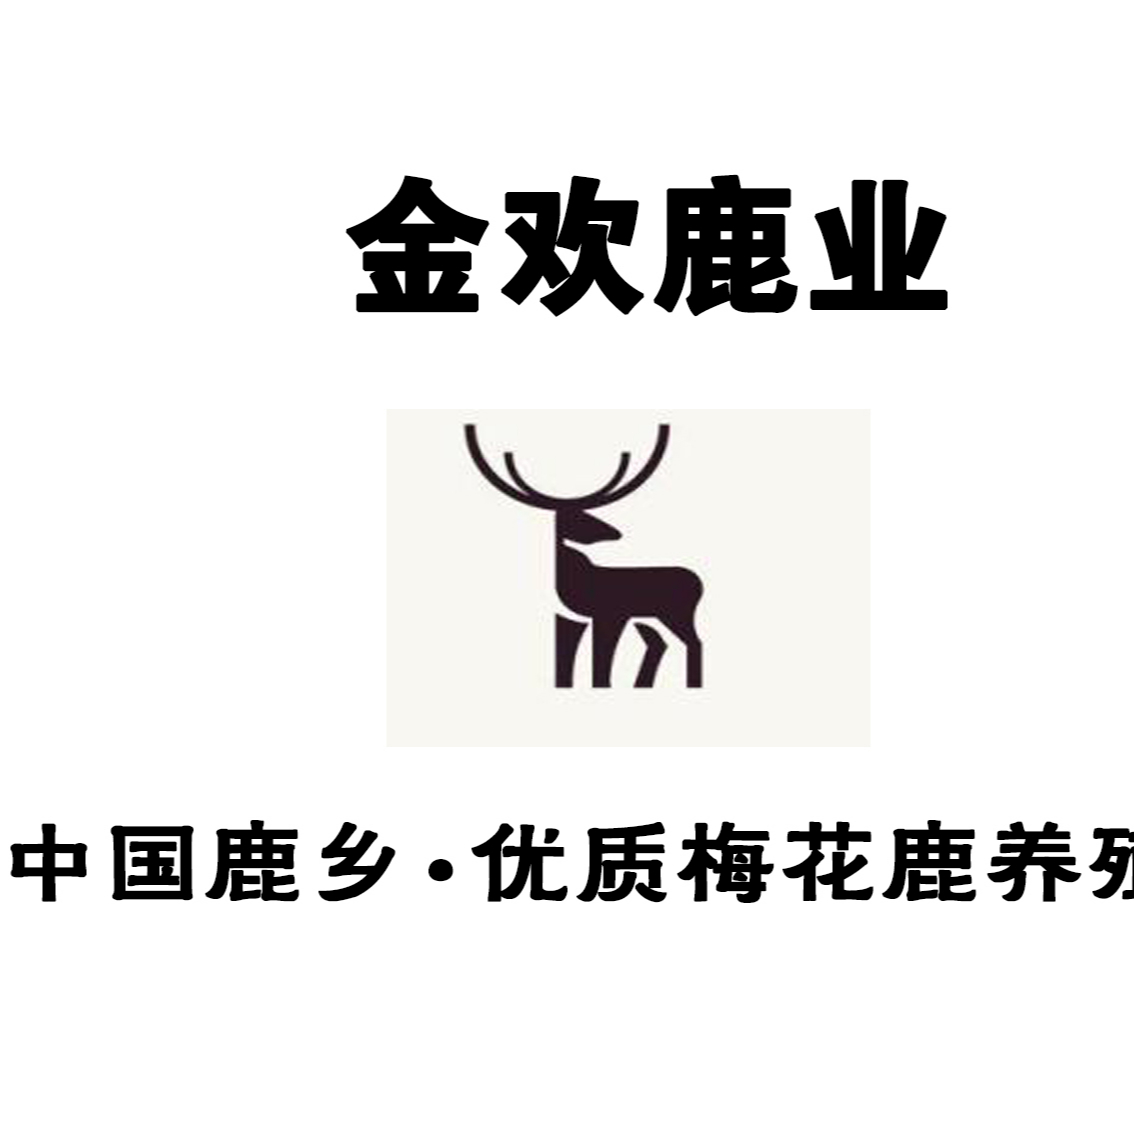 中国鹿乡,优质梅花鹿养殖基地          产品规划